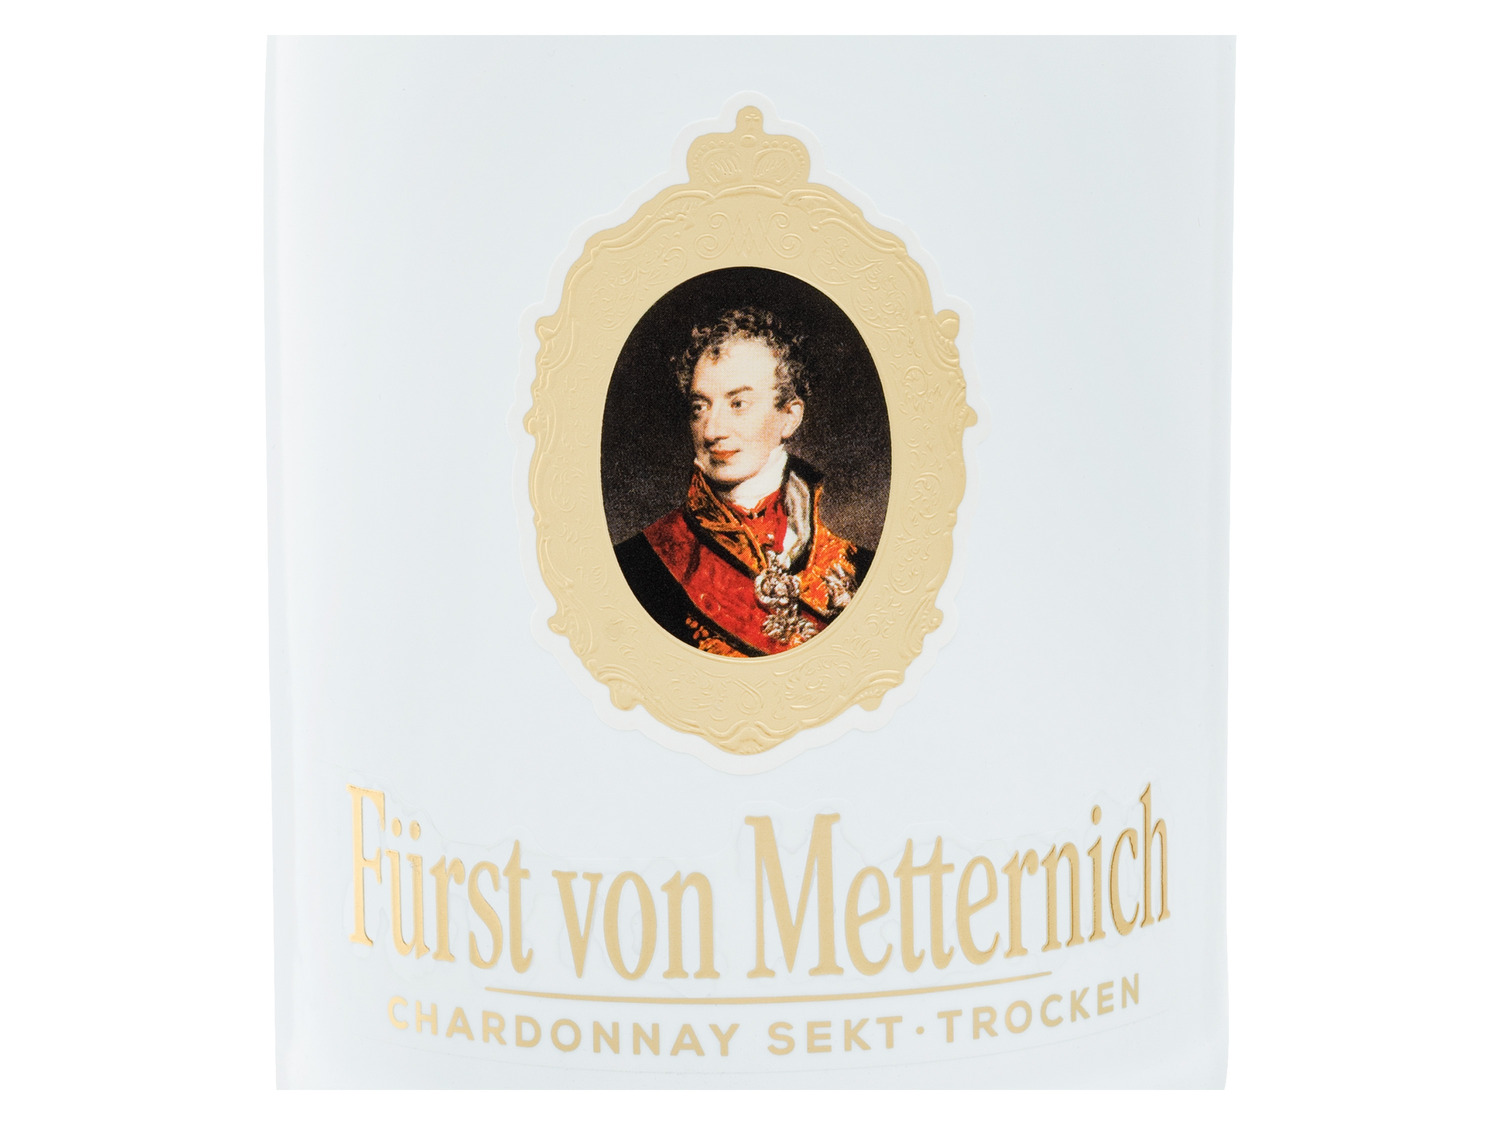 Fürst von Metternich Deutscher Sekt Chardonnay trocken…